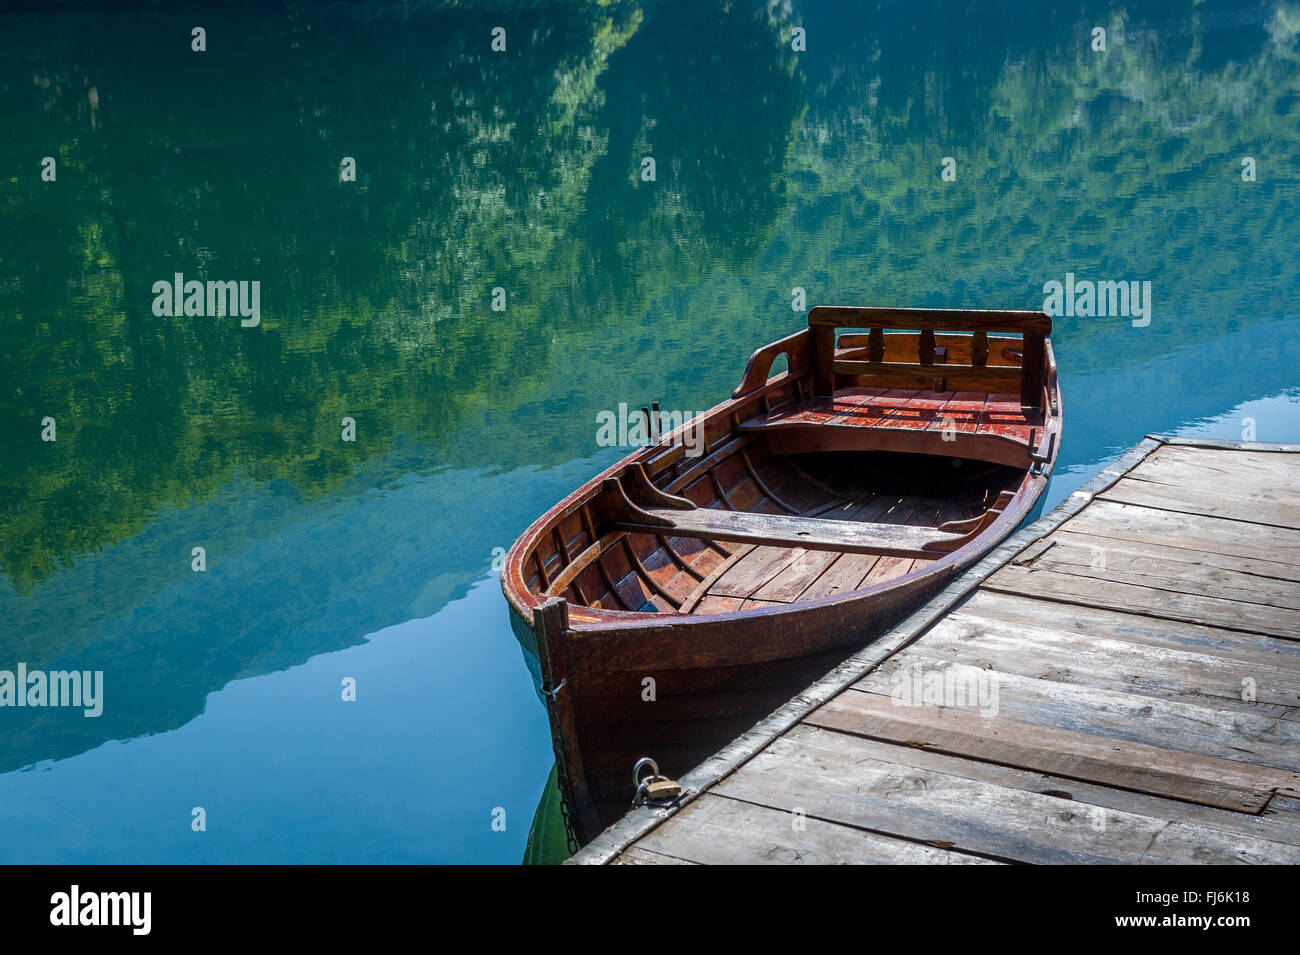 La barca di legno, sky e foresta riflessa nello specchio acqua di lago Foto Stock